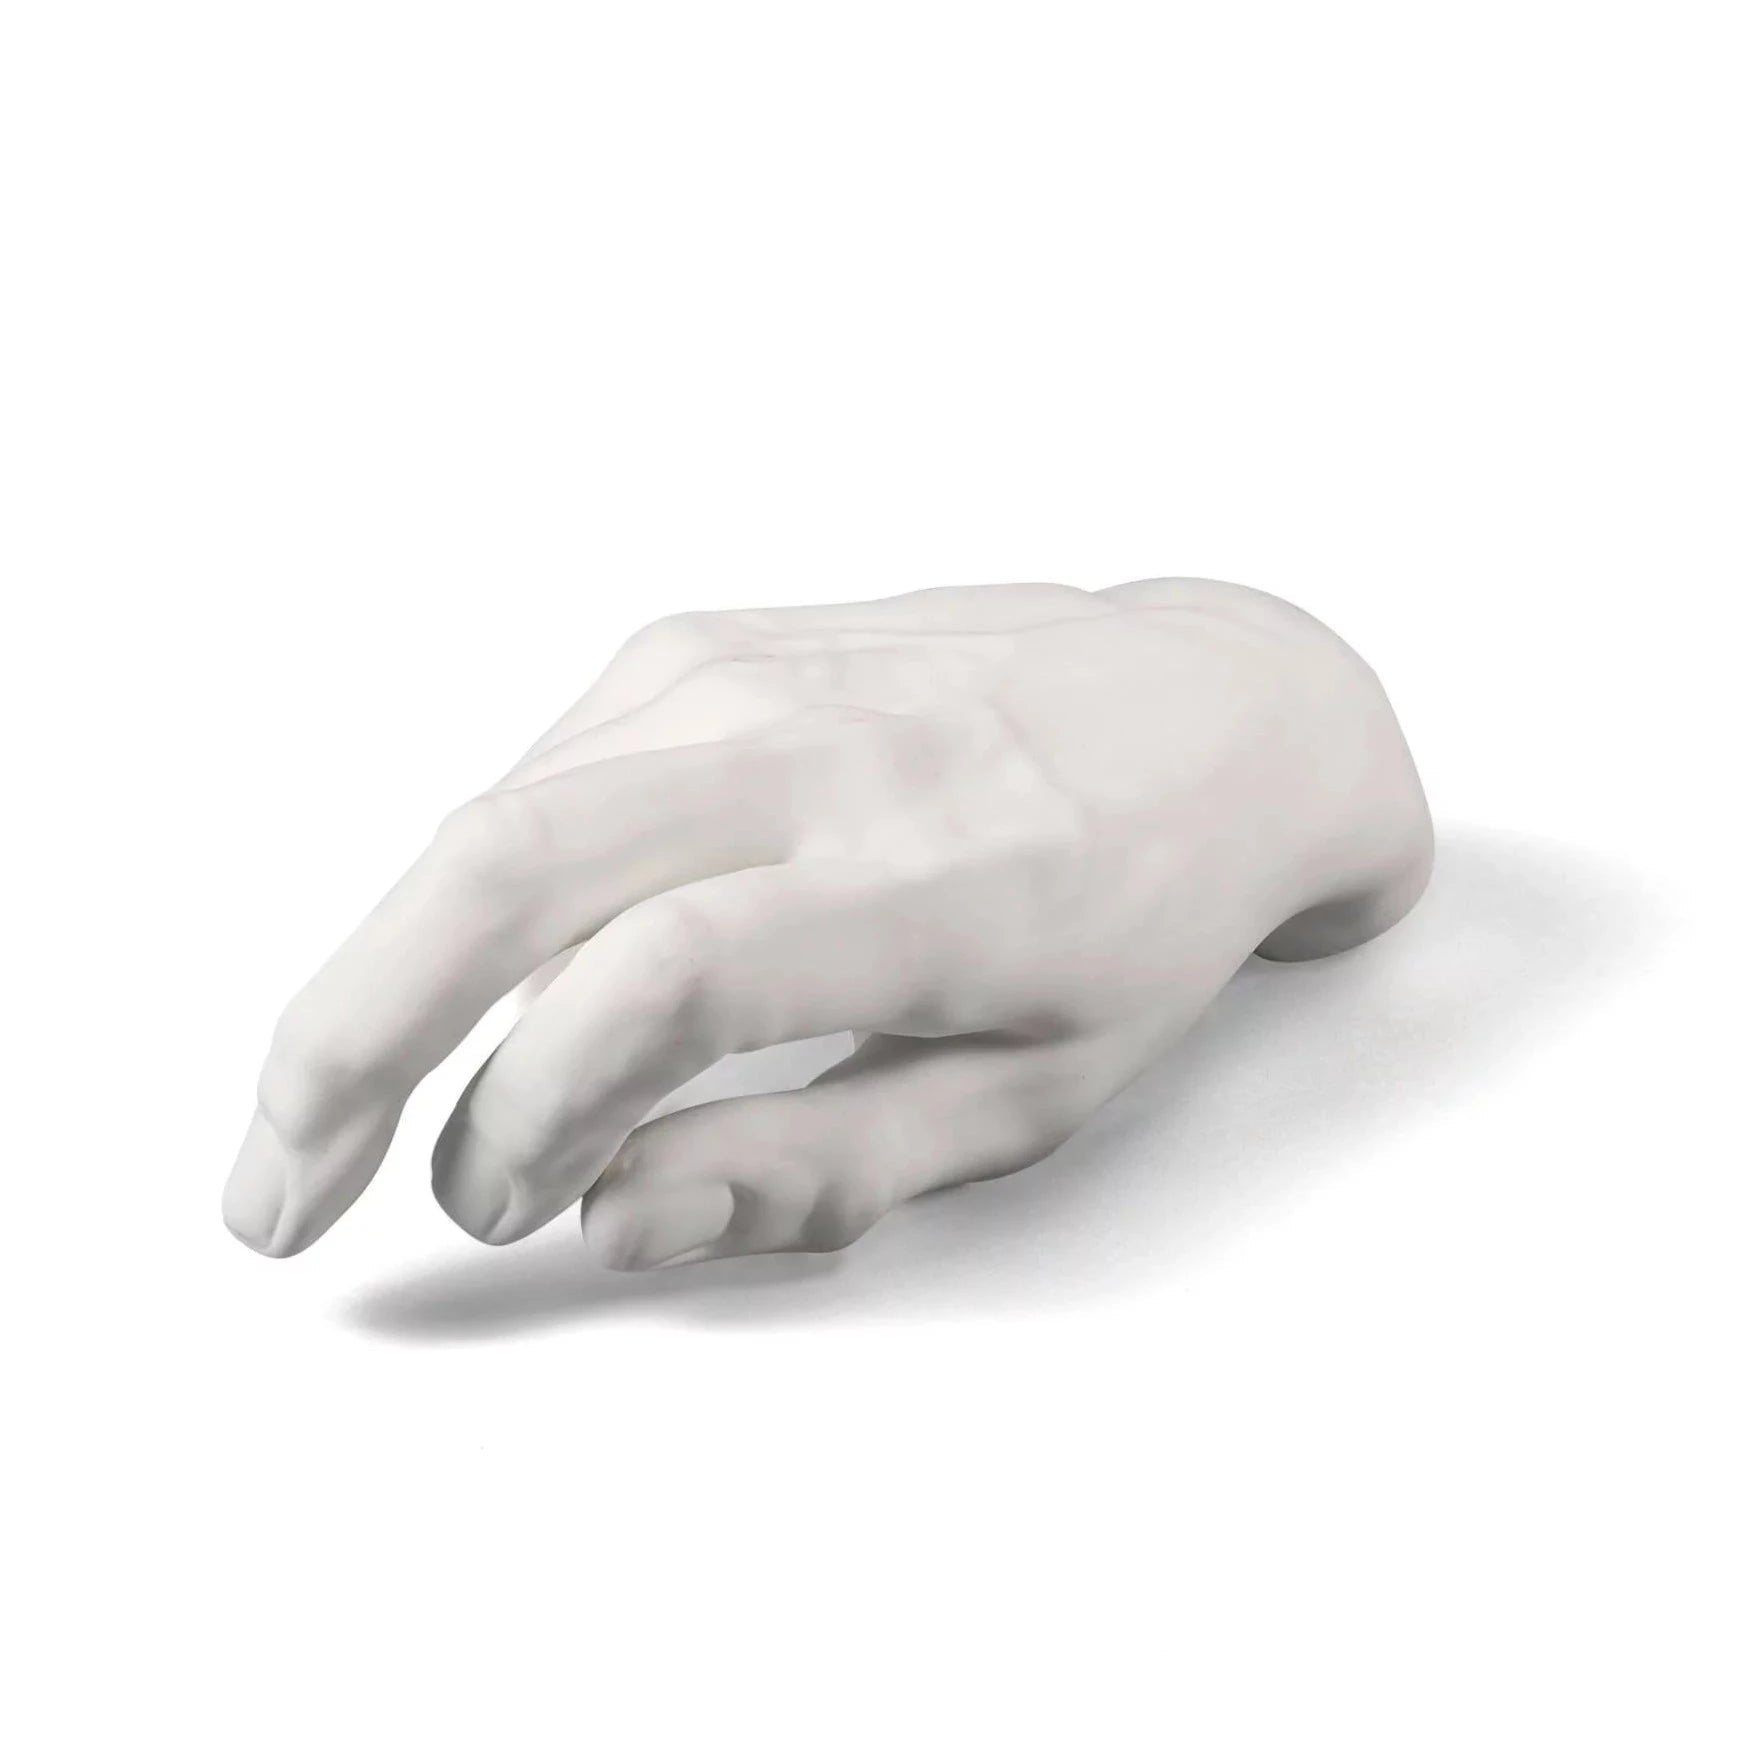 MEMORABILIA MVSEVM MALE HAND decoration white